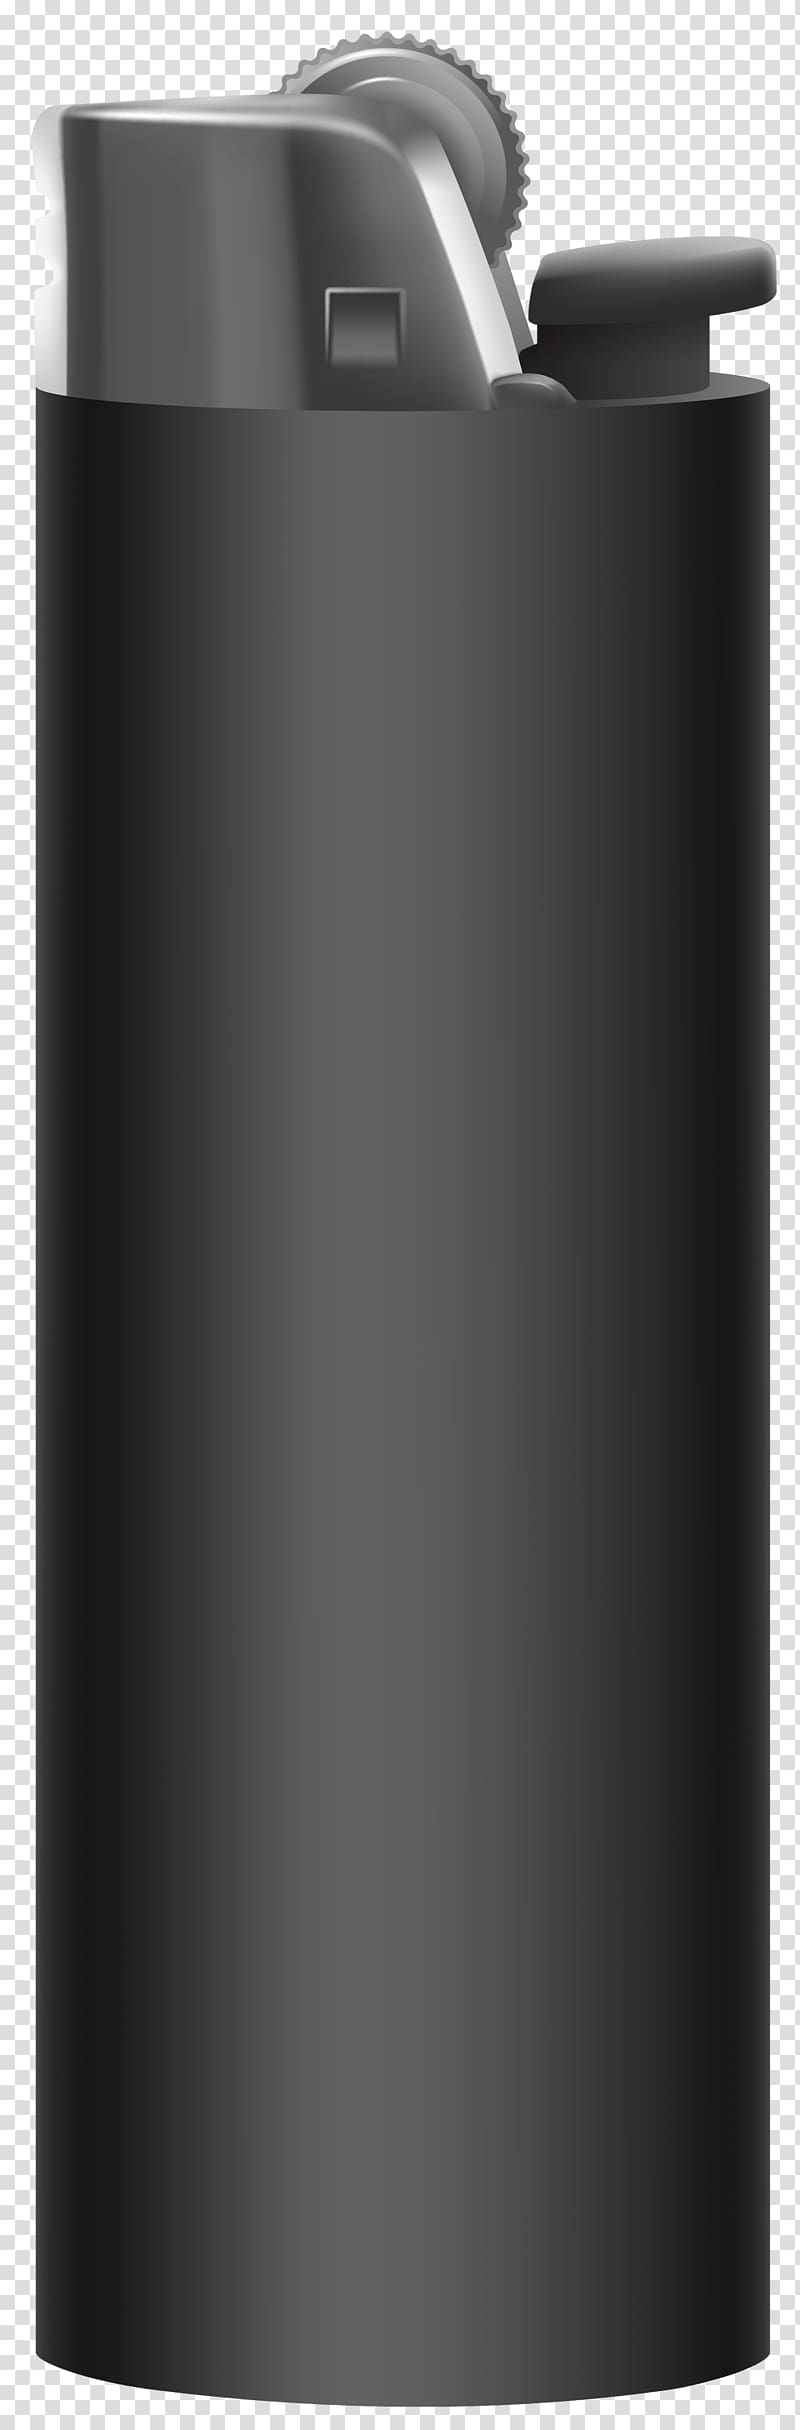 grey disposable lighter illustration, Plastic Lighter Black transparent background PNG clipart